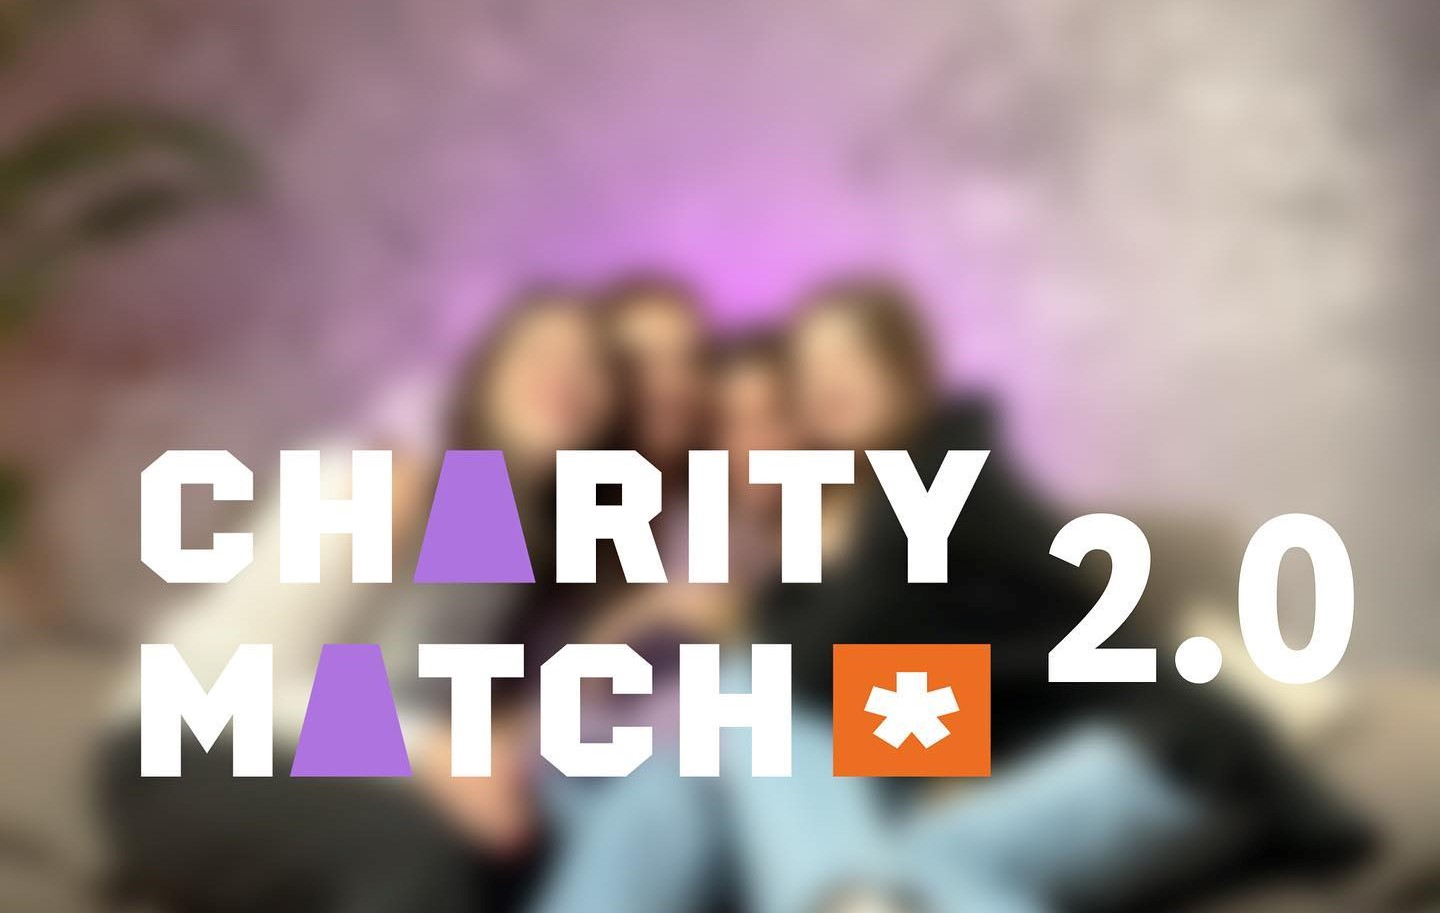 19 квітня стартує освітній курс Charity Match 2.0 для неприбуткових організацій і волонтерських ініціатив